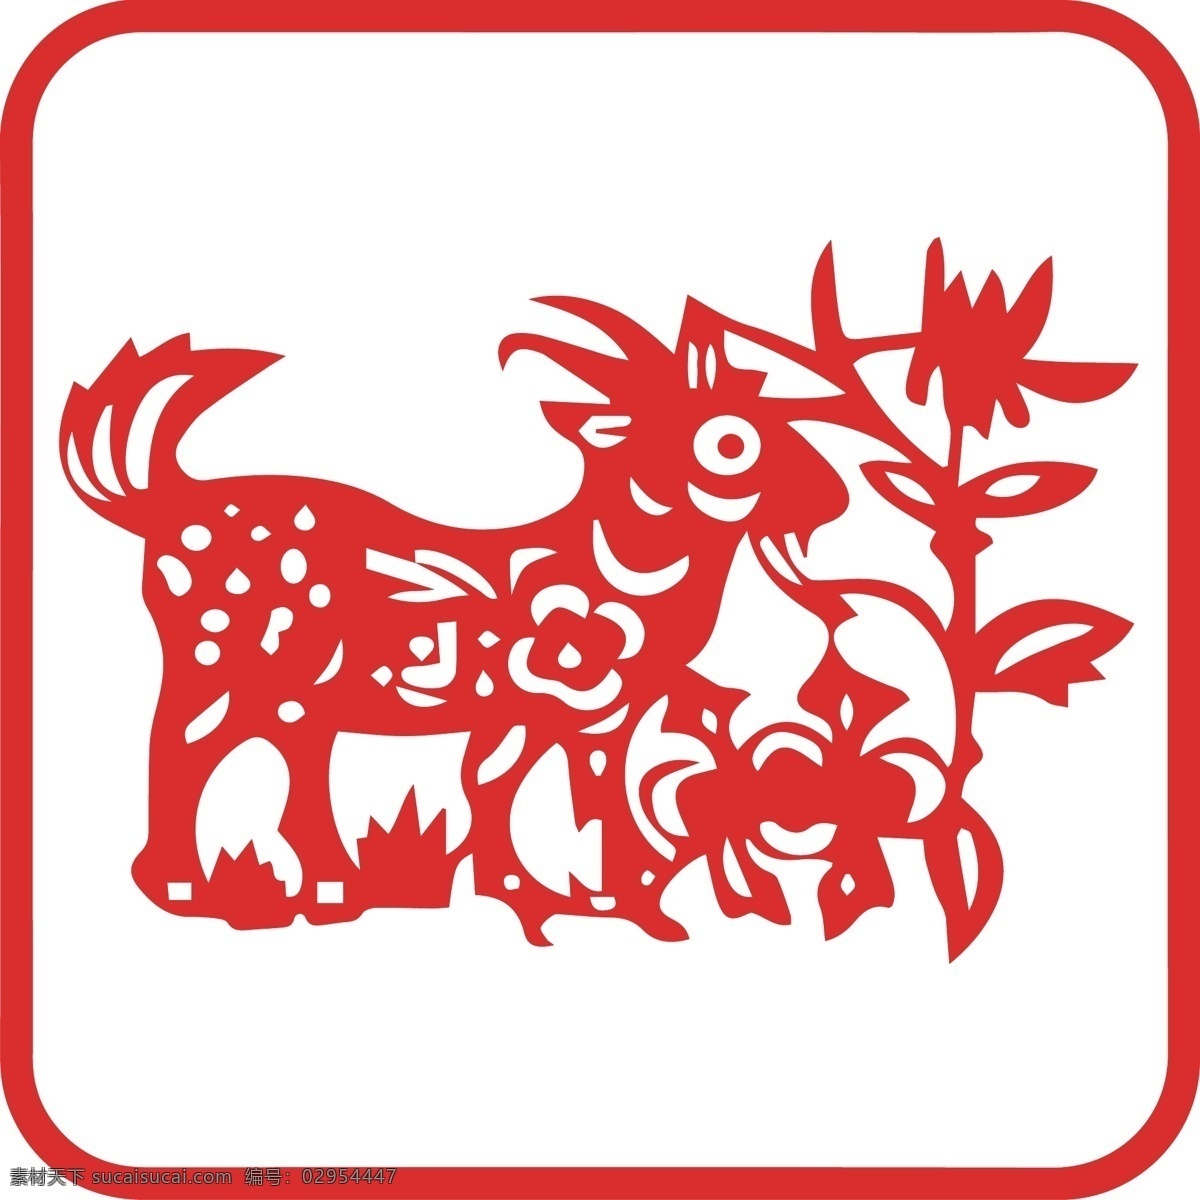 生肖 羊 剪纸 红色 年画 12生肖 年画素材 一般素材系列 文化艺术 传统文化